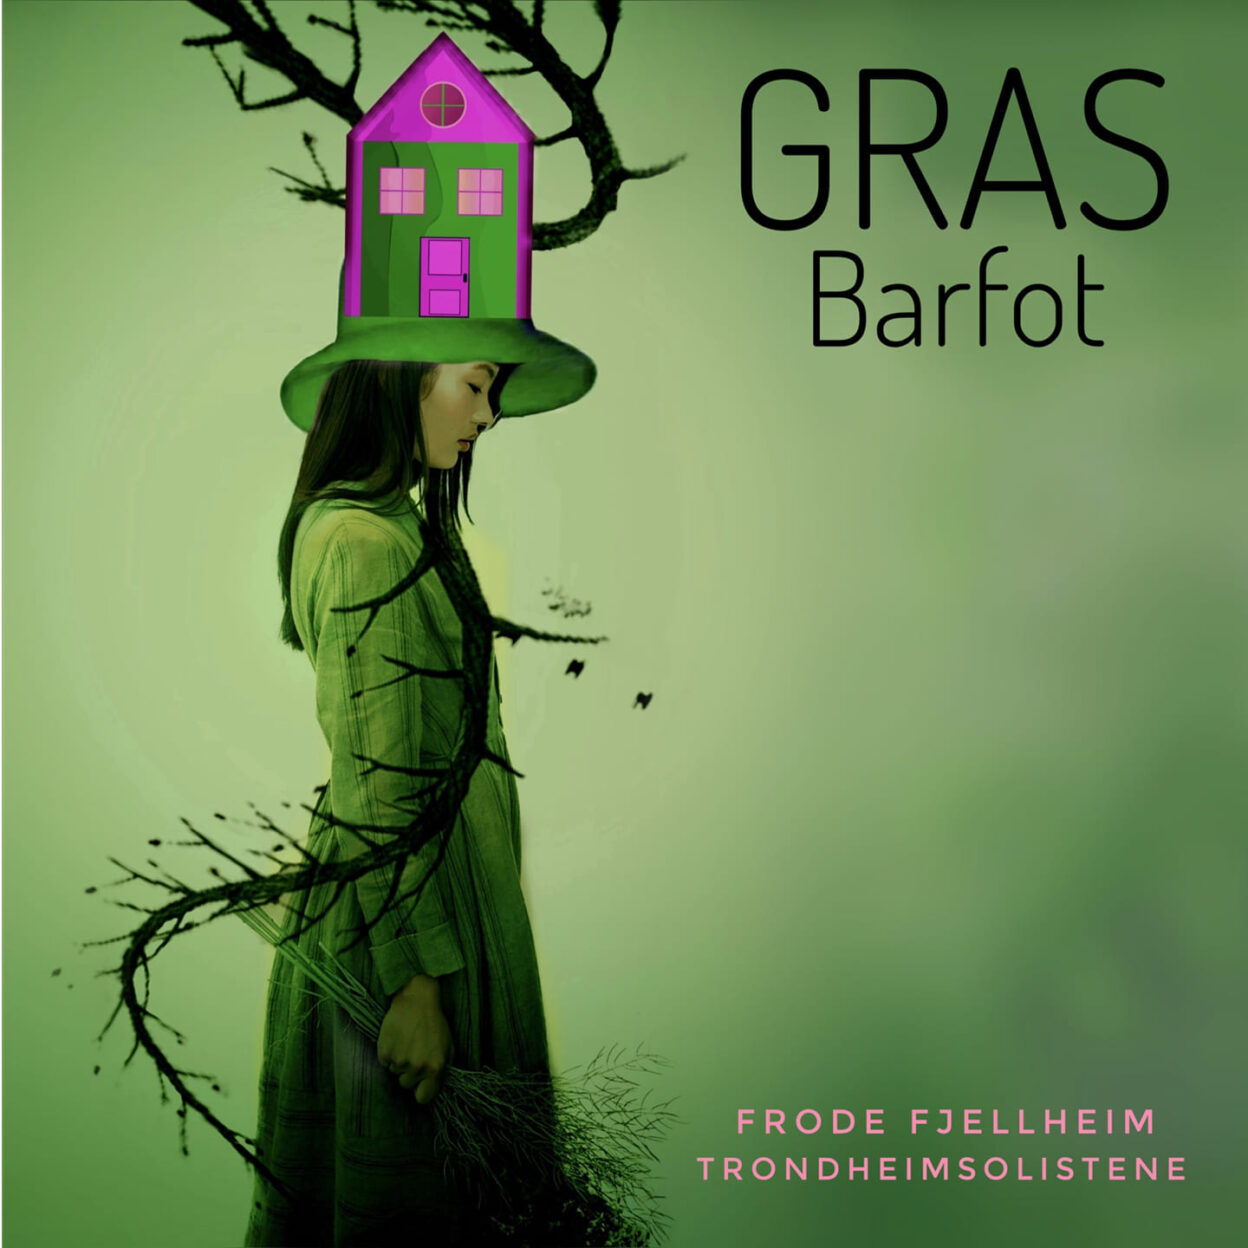 Billettsalg på nett til Gras og deres nye album barfot